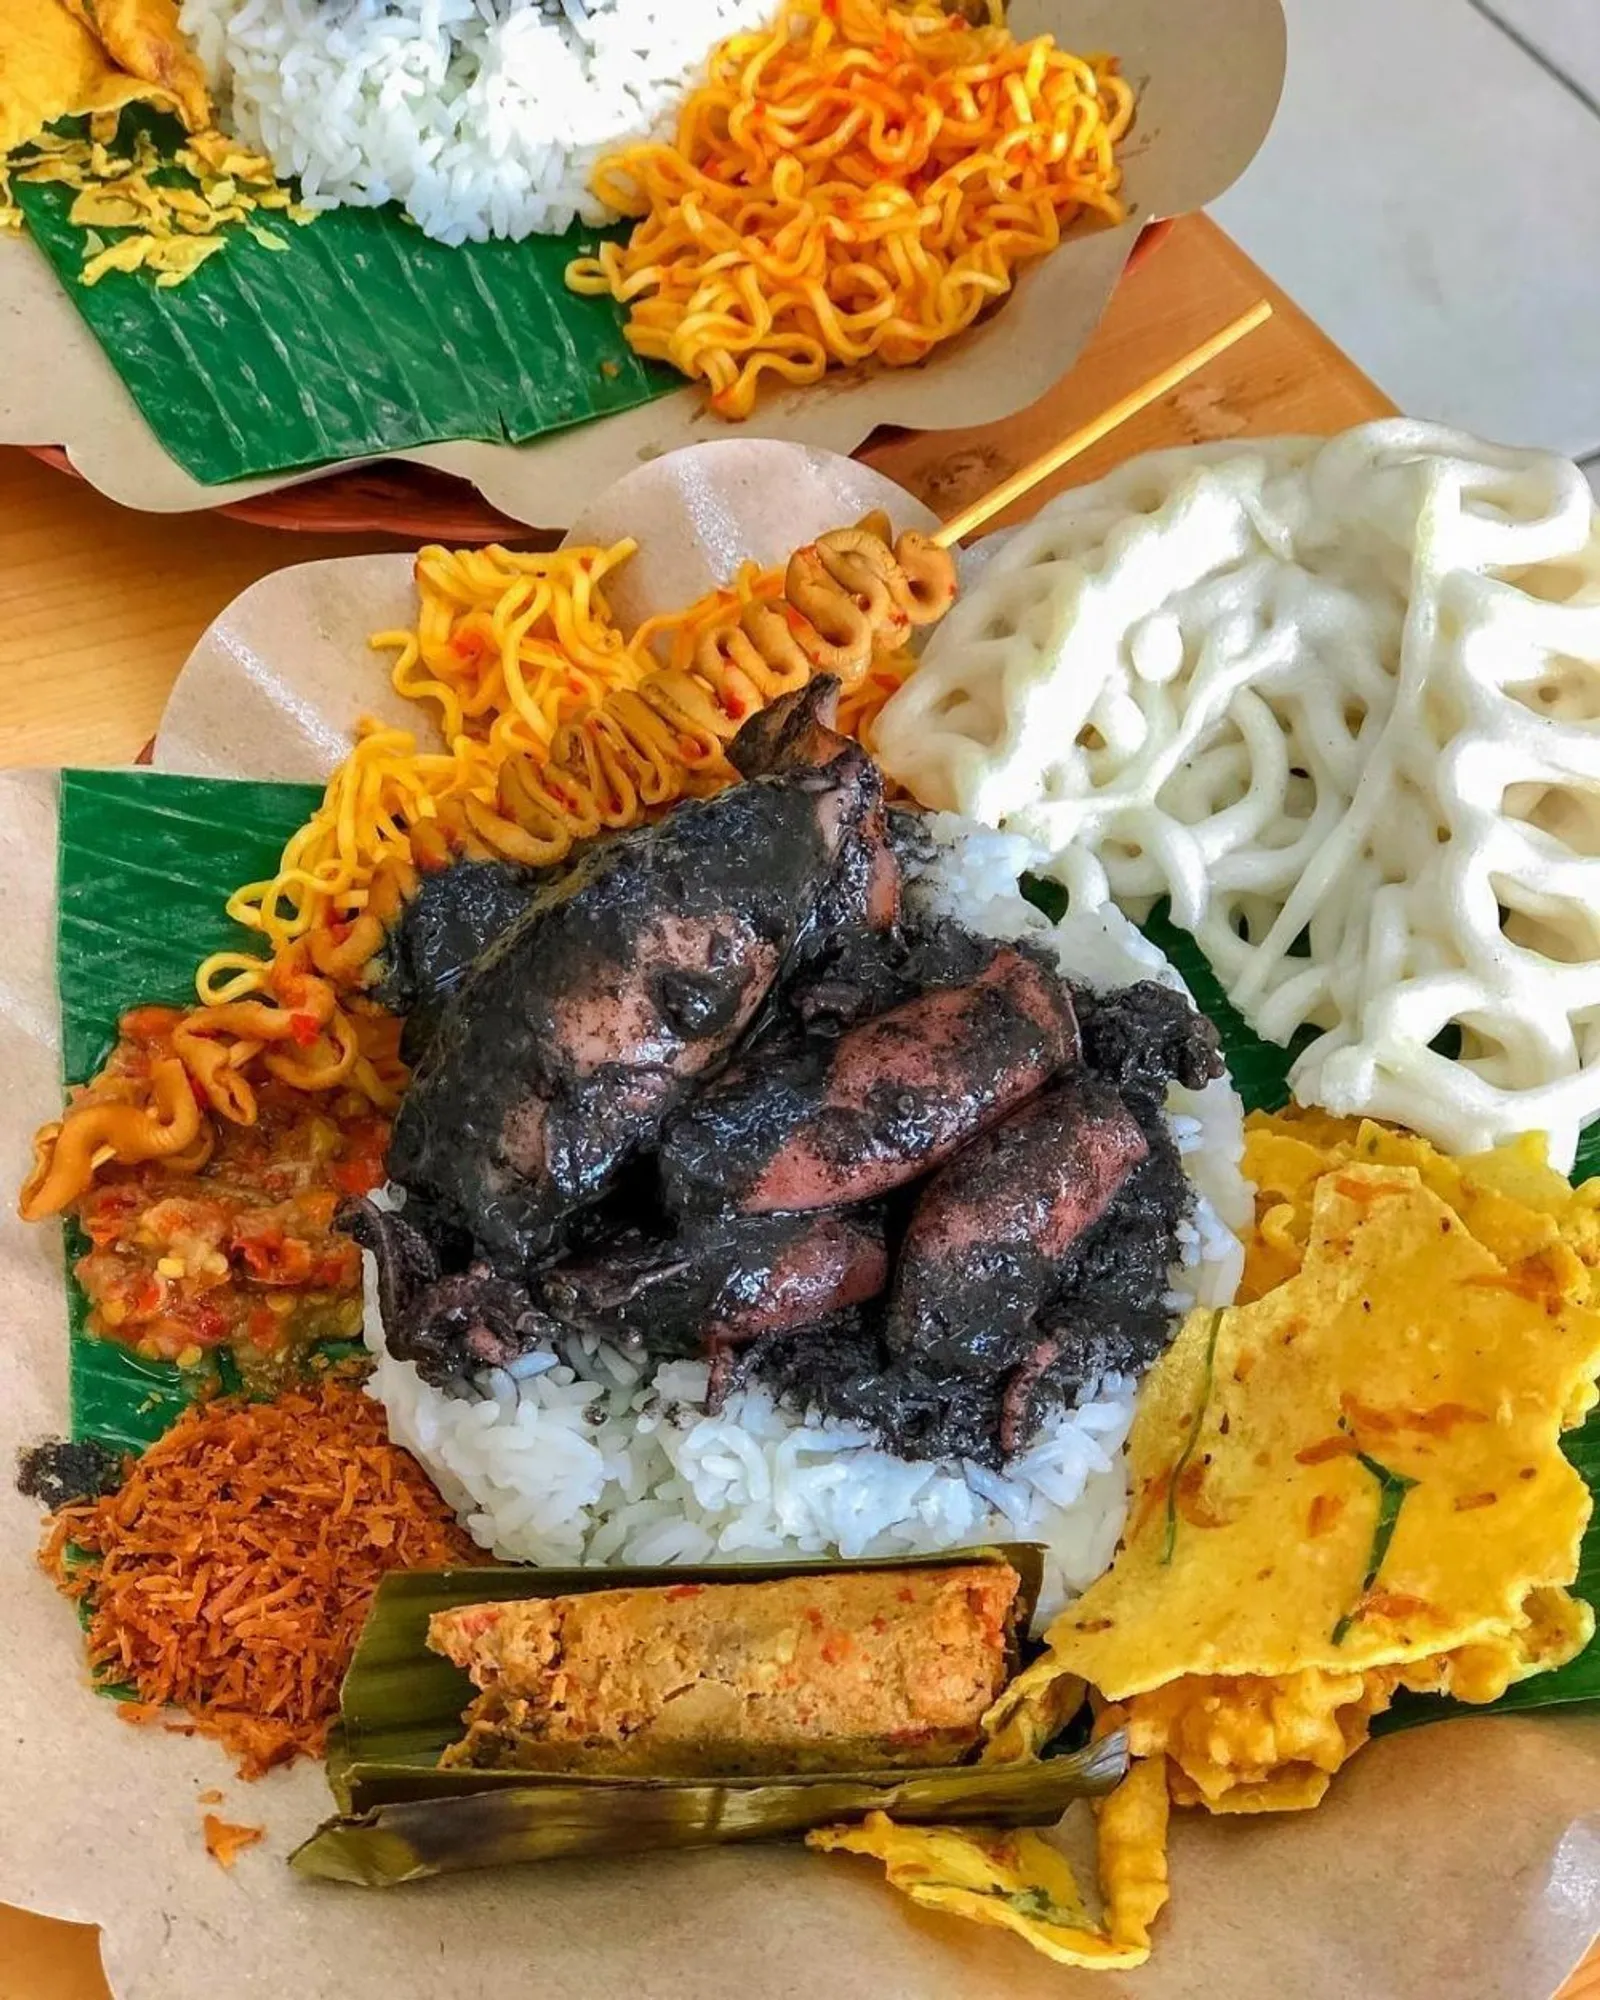 10 Tempat Wisata Kuliner di Tangerang Paling Enak, Kamu Wajib ke Sini!